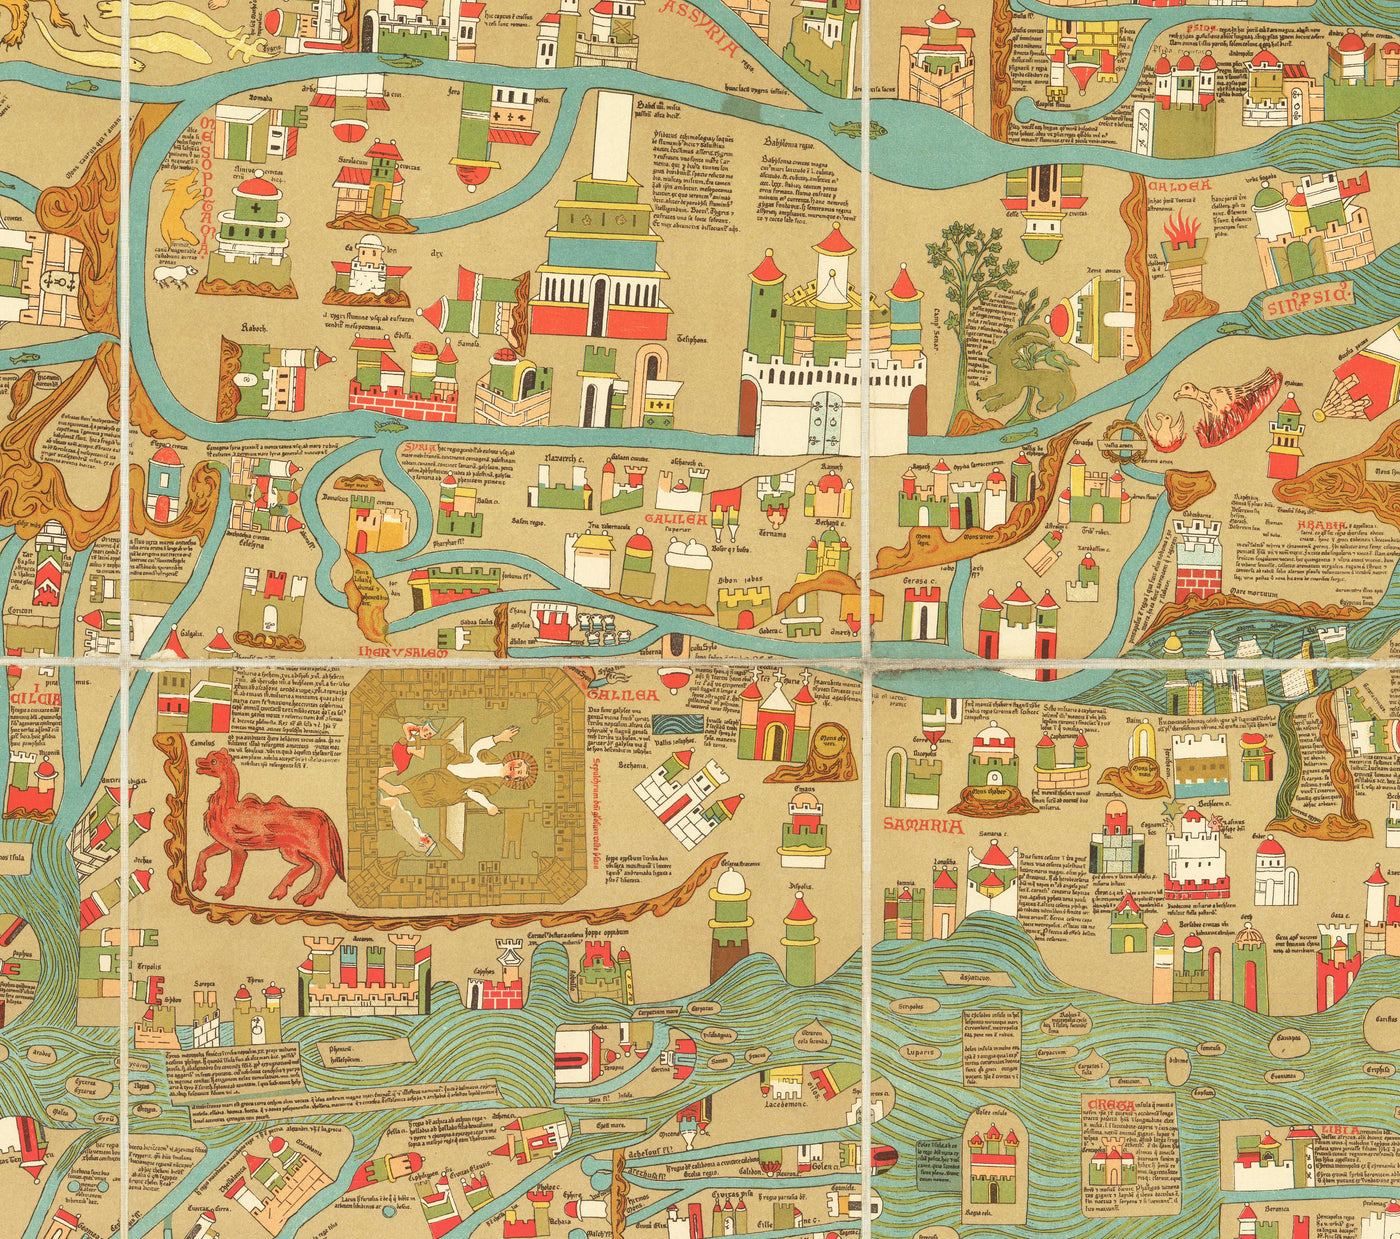 Old Ebstorf Mappa Mundi - Ancient 13th Century World Atlas - Gibraltar, Mediterranean, Jerusalem, Sicily, Greece